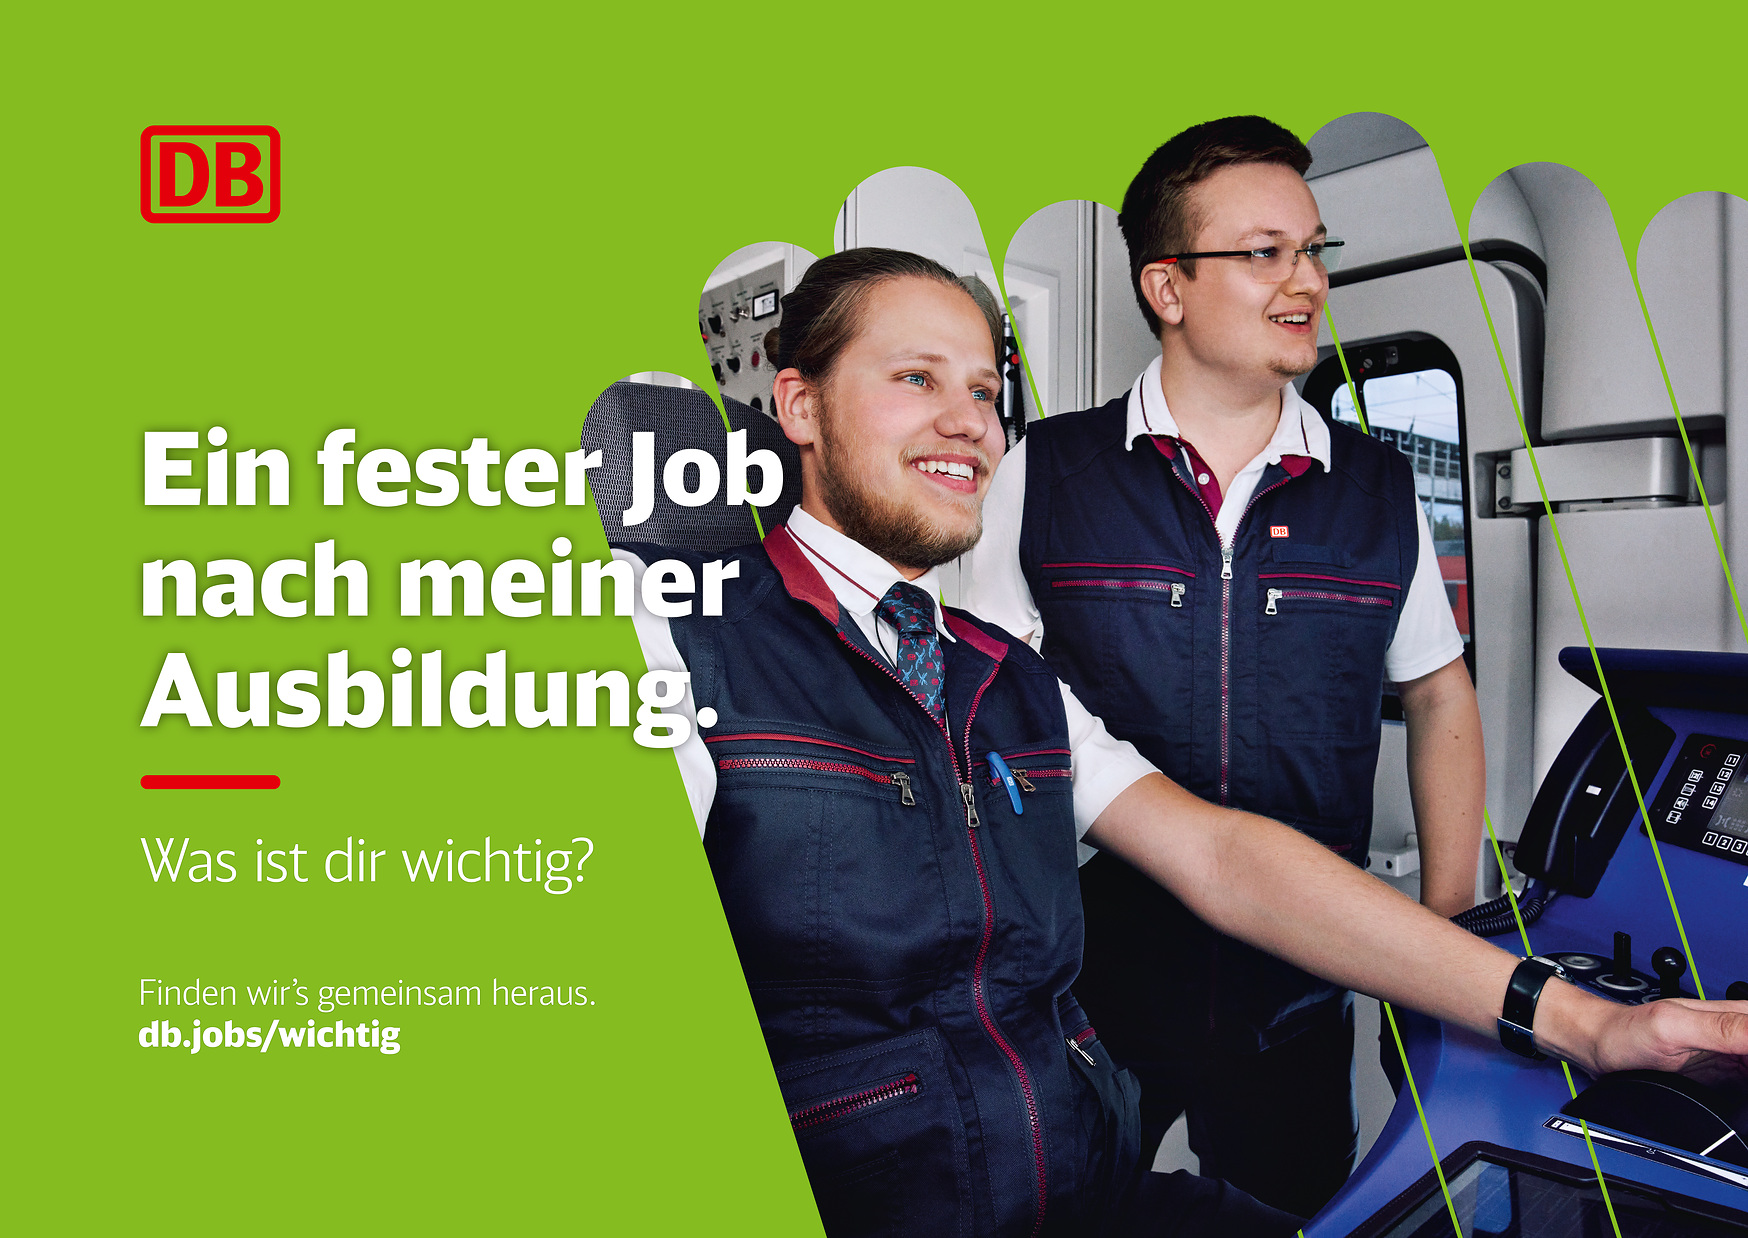 Motiv der neuen Arbeitgeberkampagne der Deutschen Bahn mit 2 Bahnmitarbeitern (Foto: Deutsche Bahn AG/Mat Neidhardt)